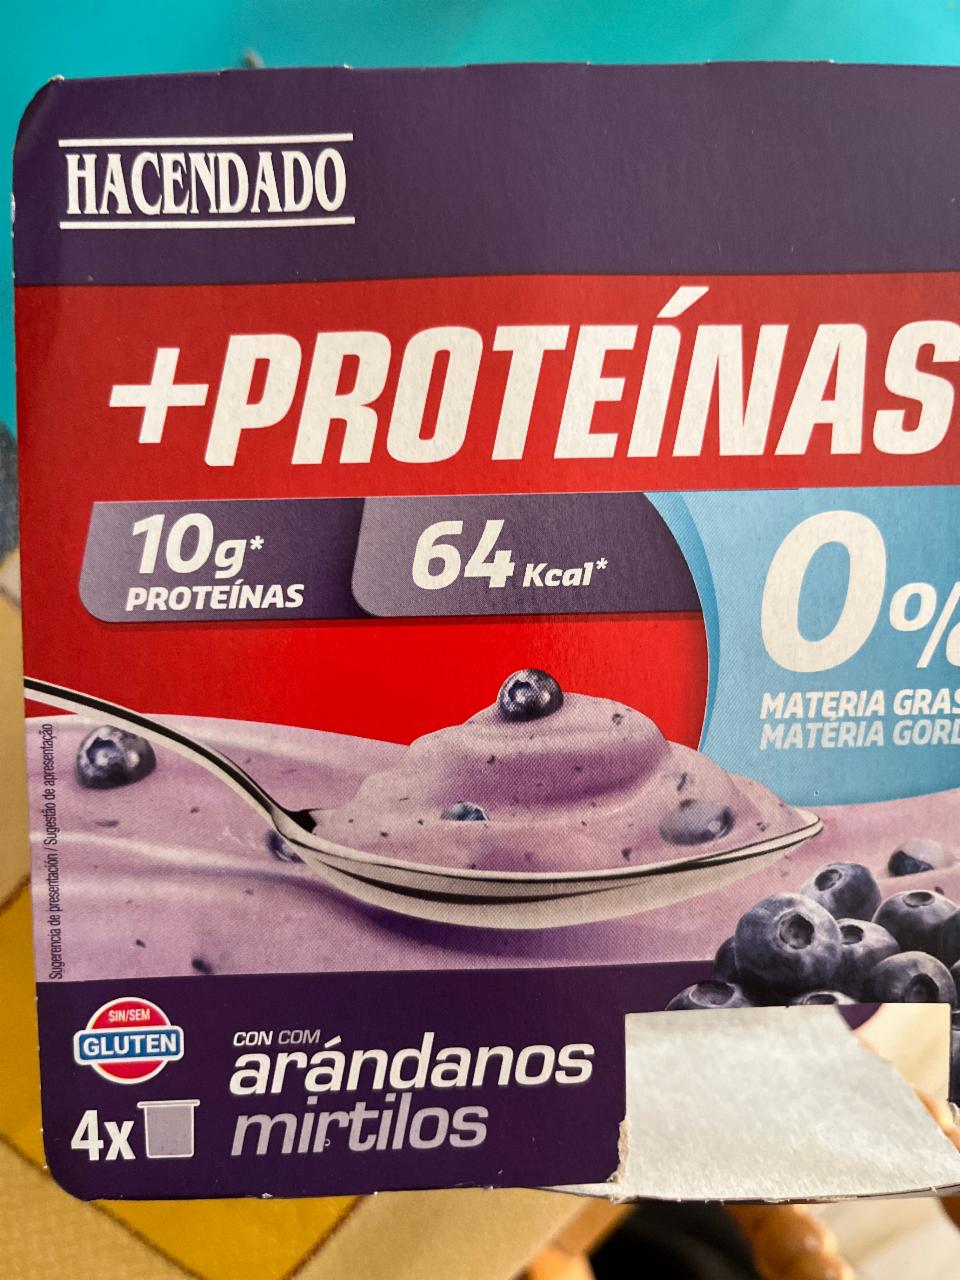 Фото - протеиновый йогурт с черникой Hacendado